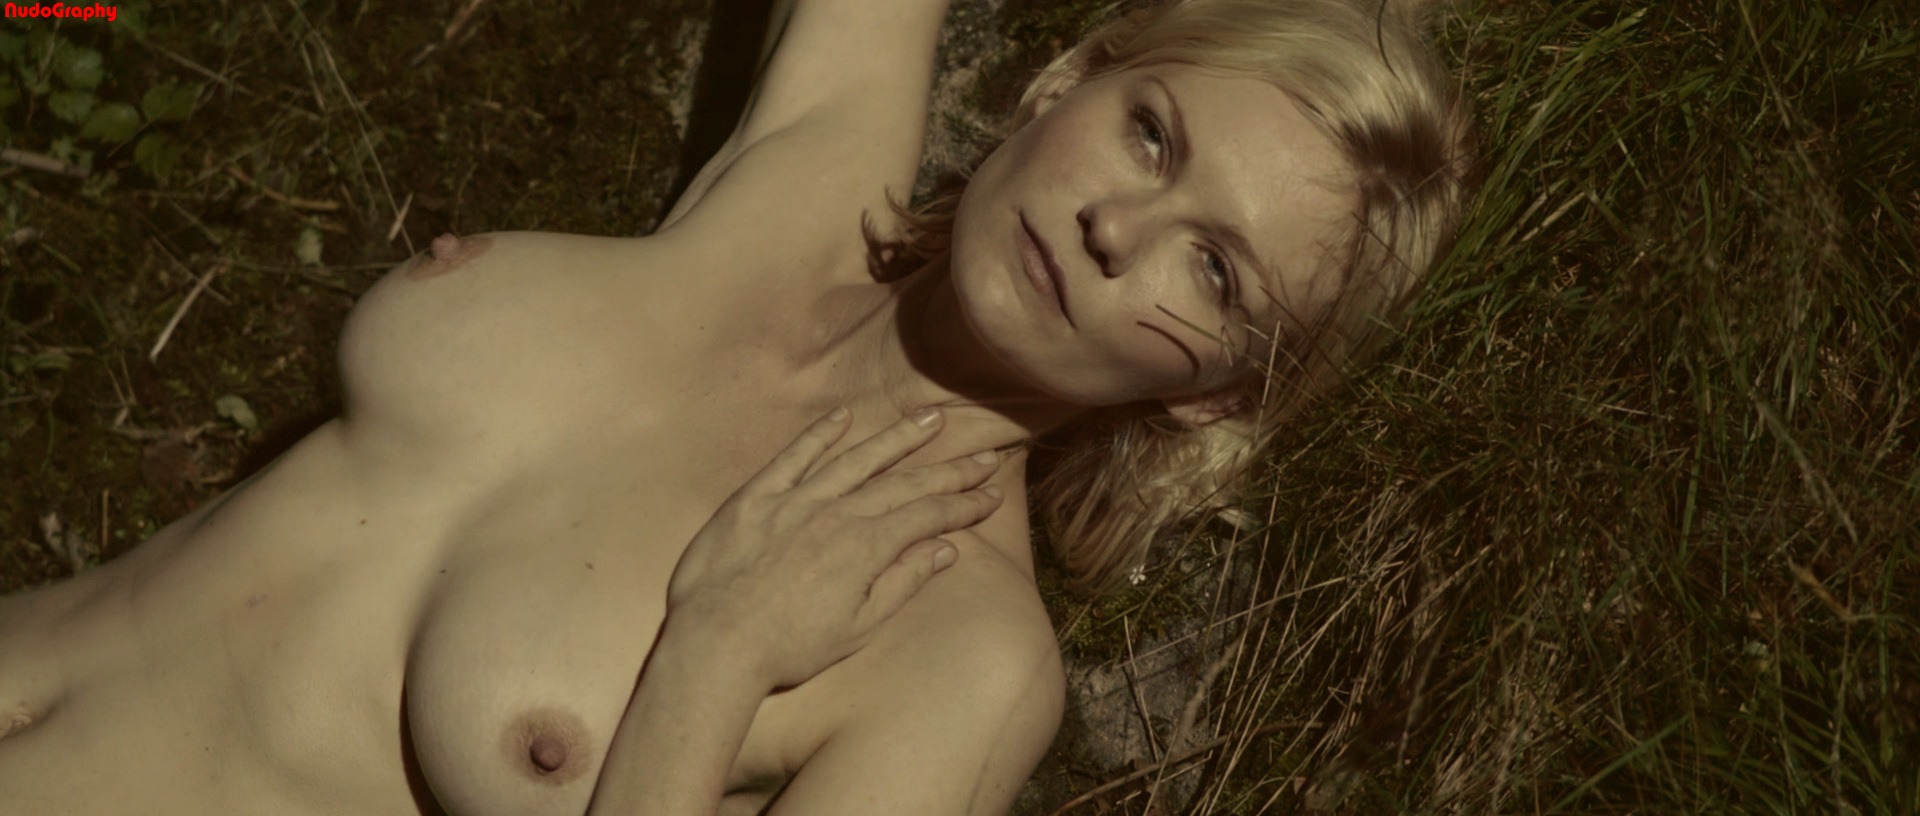 Кирстен Данст nude pics.